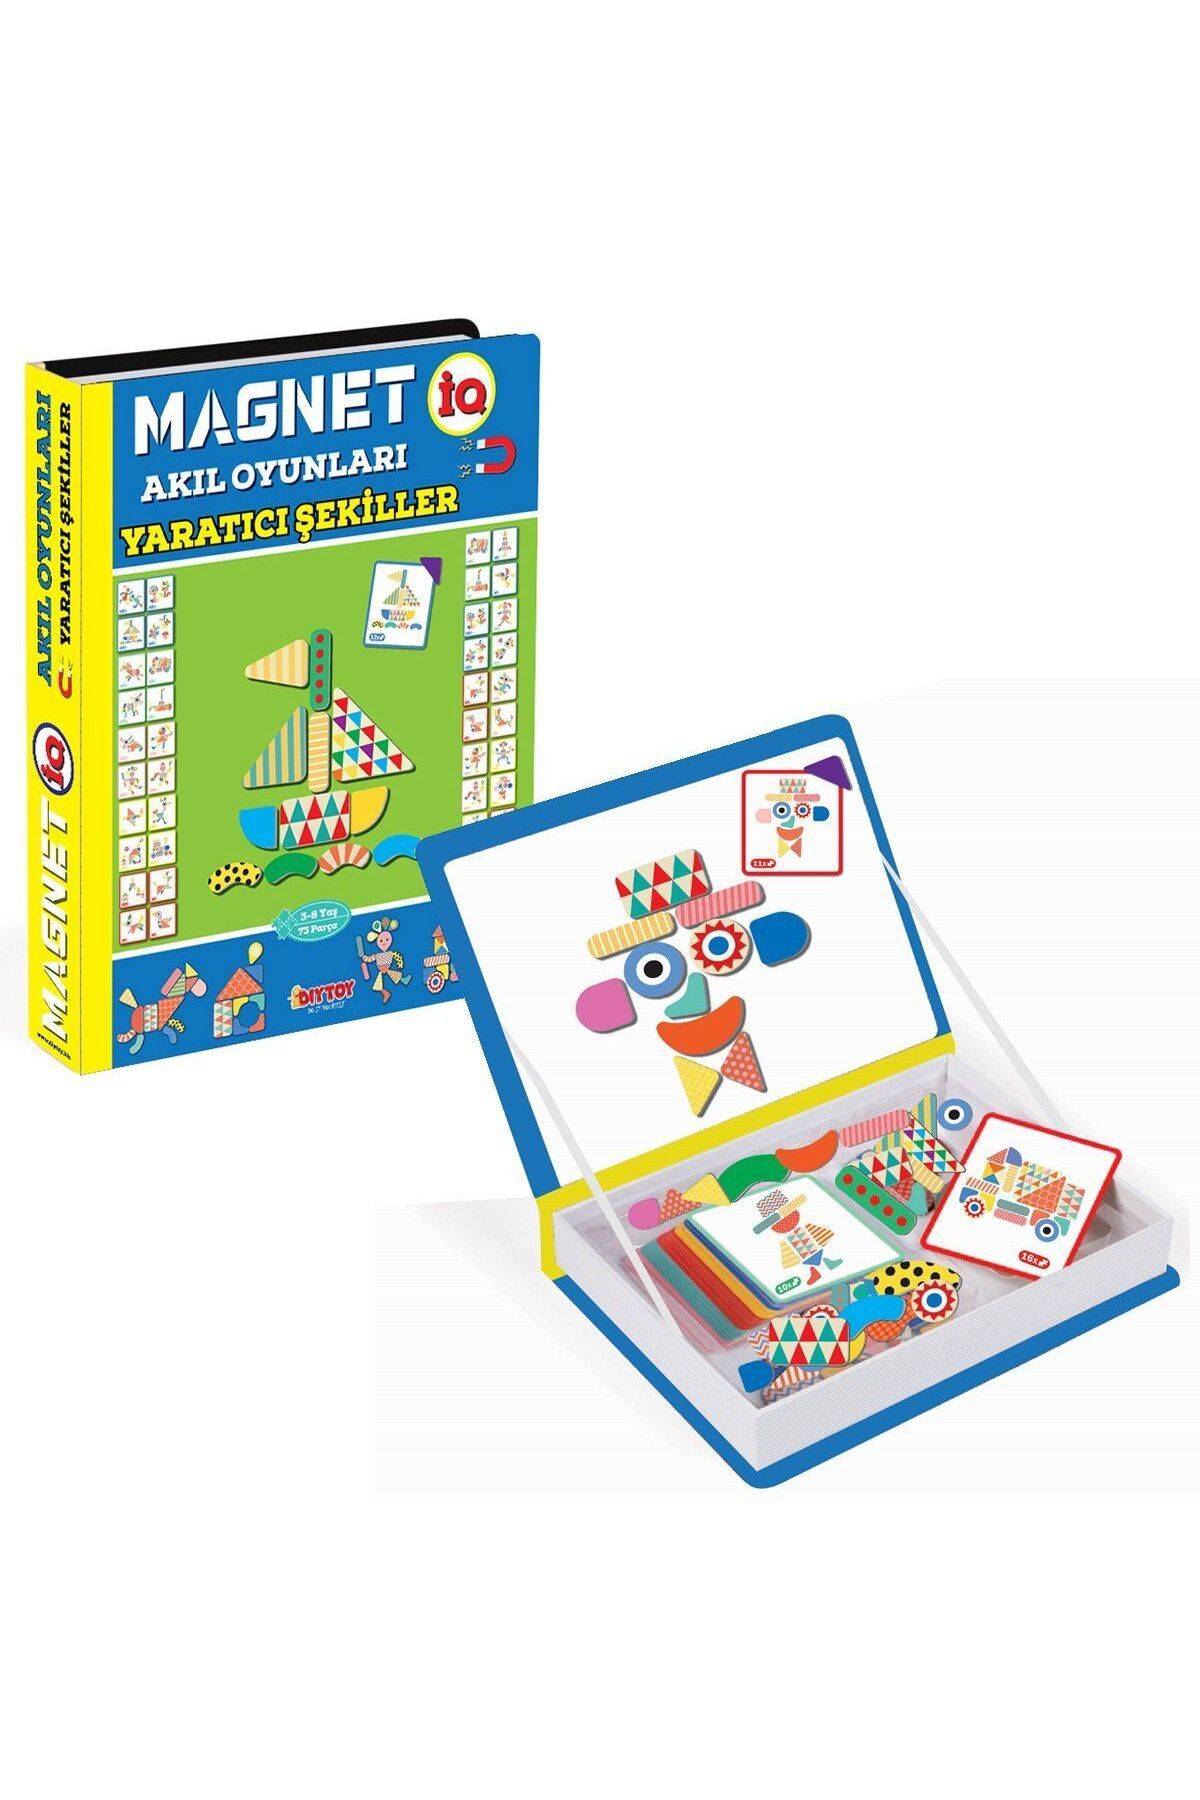 DIY Toys 1550 DıyToy, Magnet Akıl Oyunları - Yaratıcı Şekiller / 3-8 yaş - Yubi